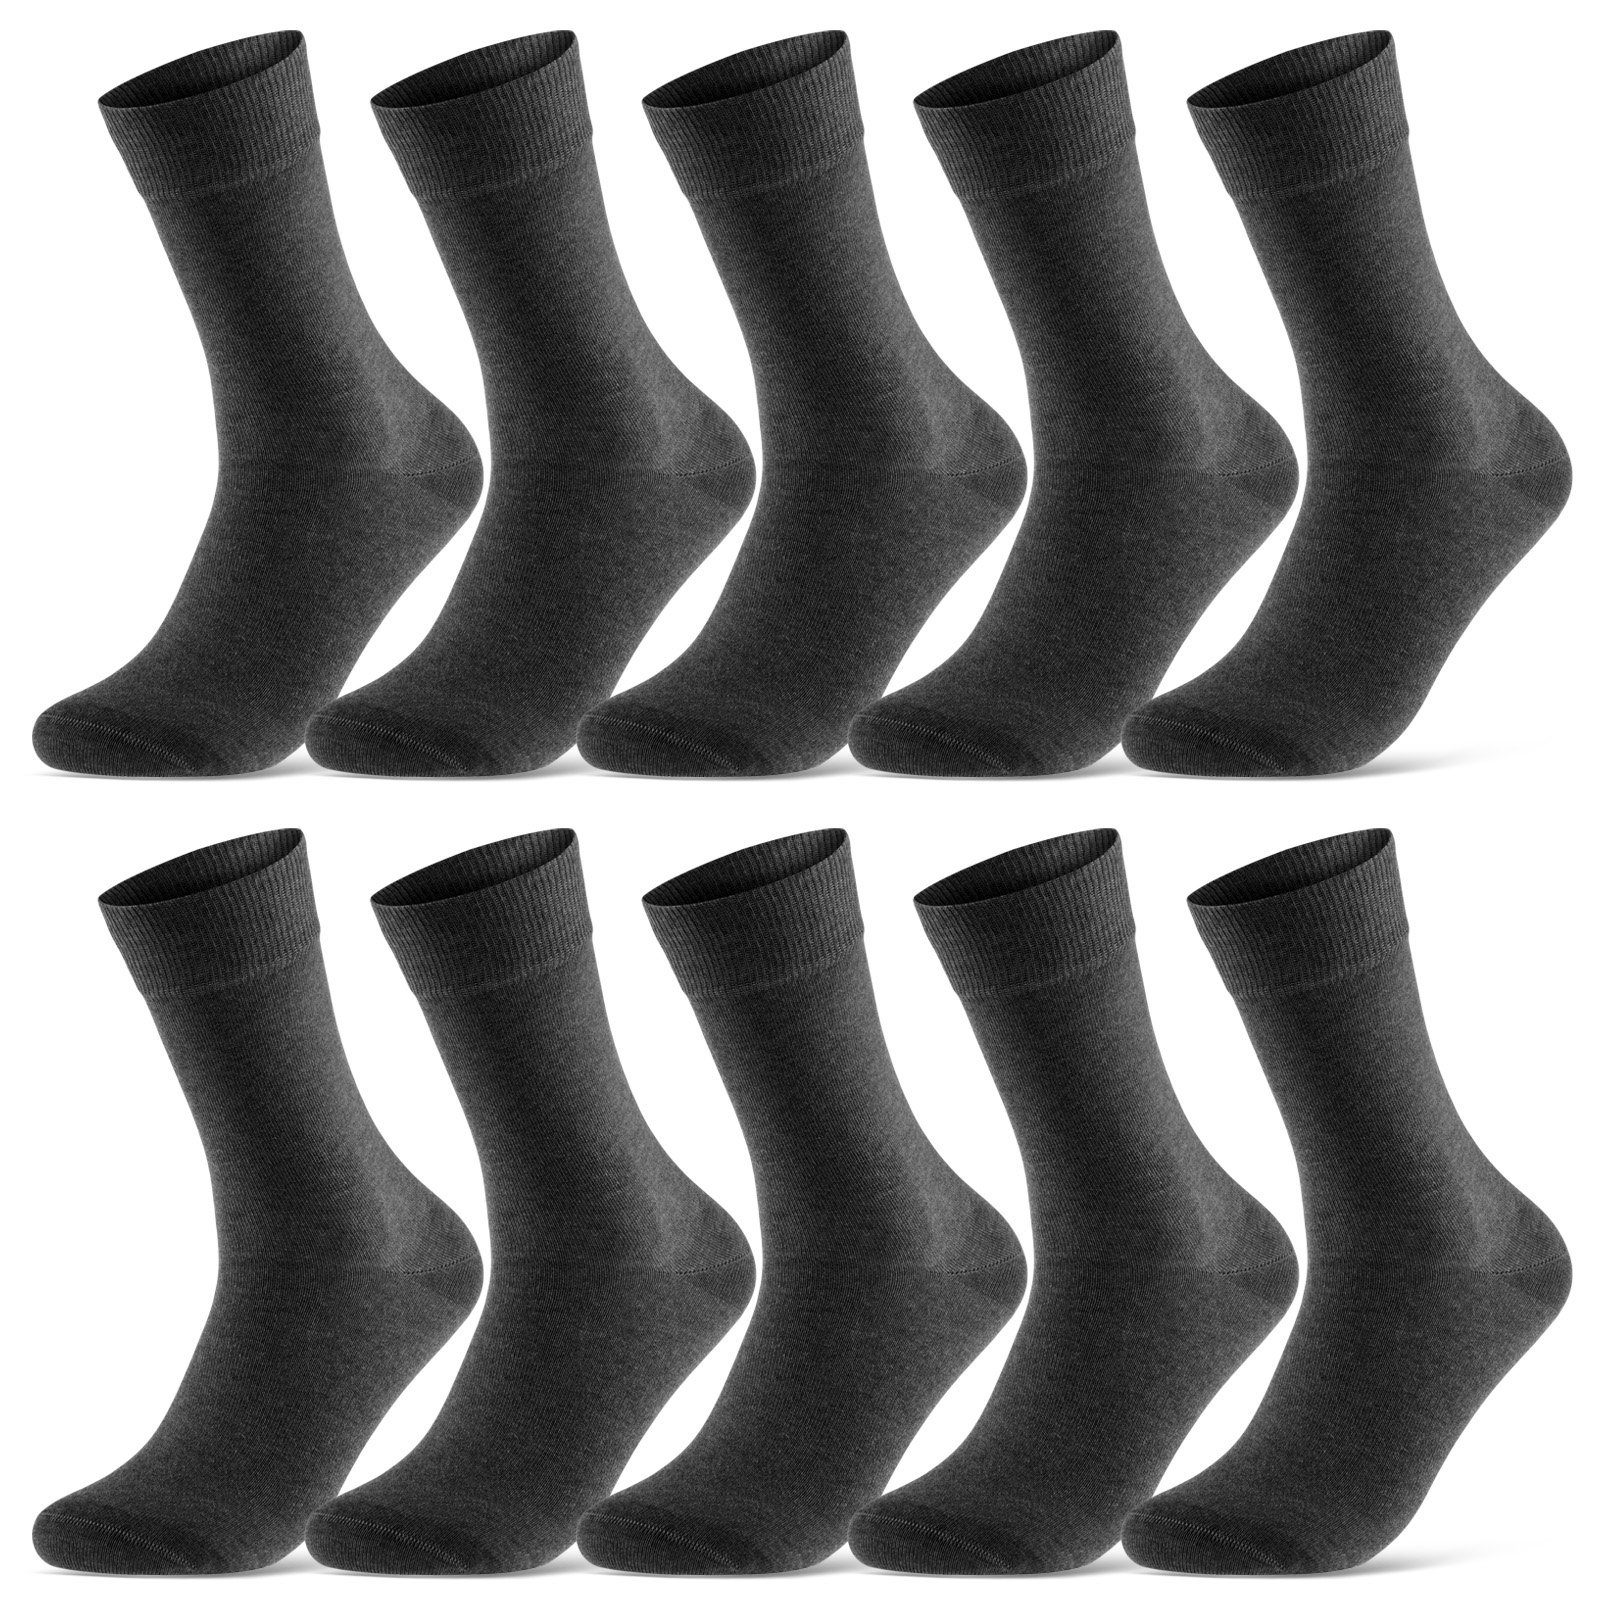 sockenkauf24 Socken 10 Paar Damen & Herren Socken Business Socken Baumwolle (Anthrazit, 39-42) mit Komfortbund (Basicline) - 70201T WP